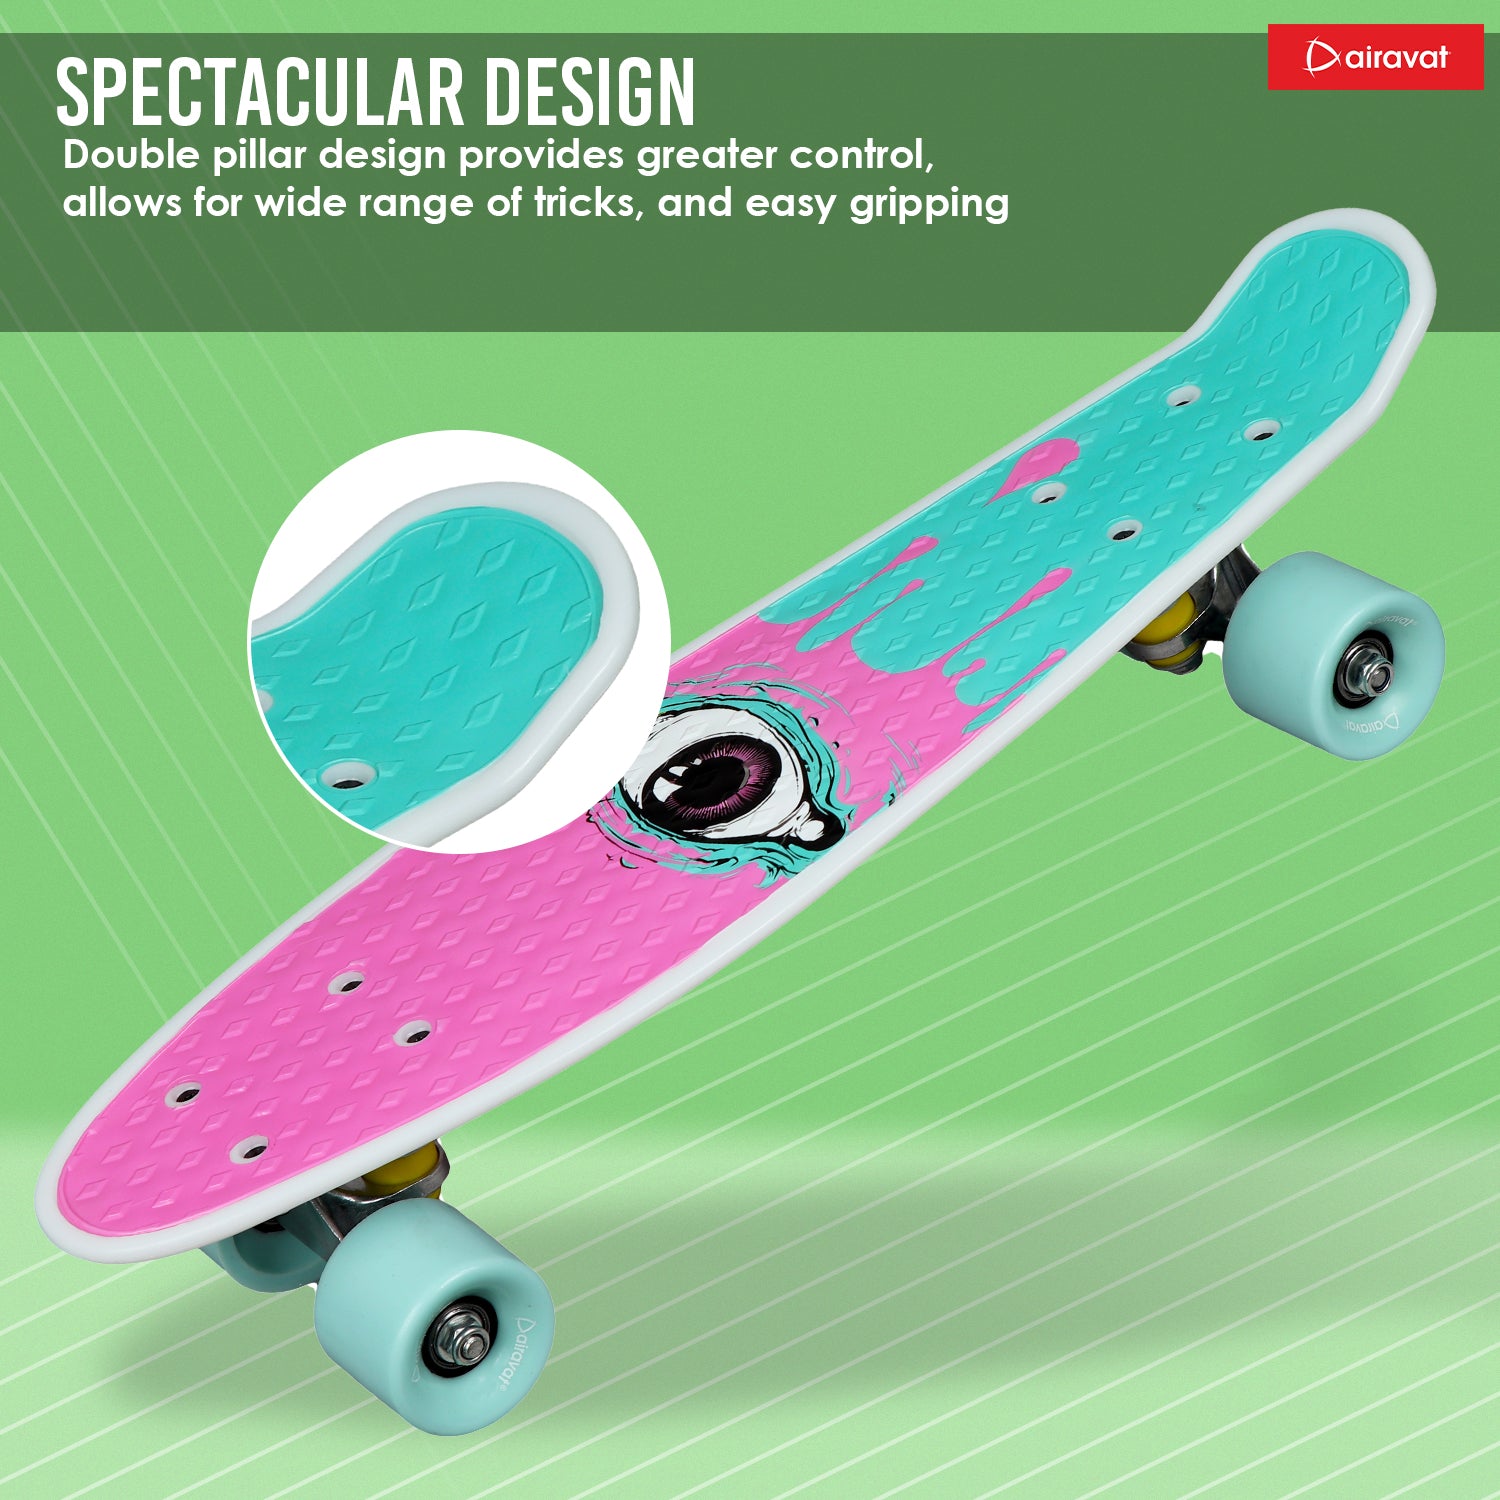 7811-skateboard-style-4-spectacular-design